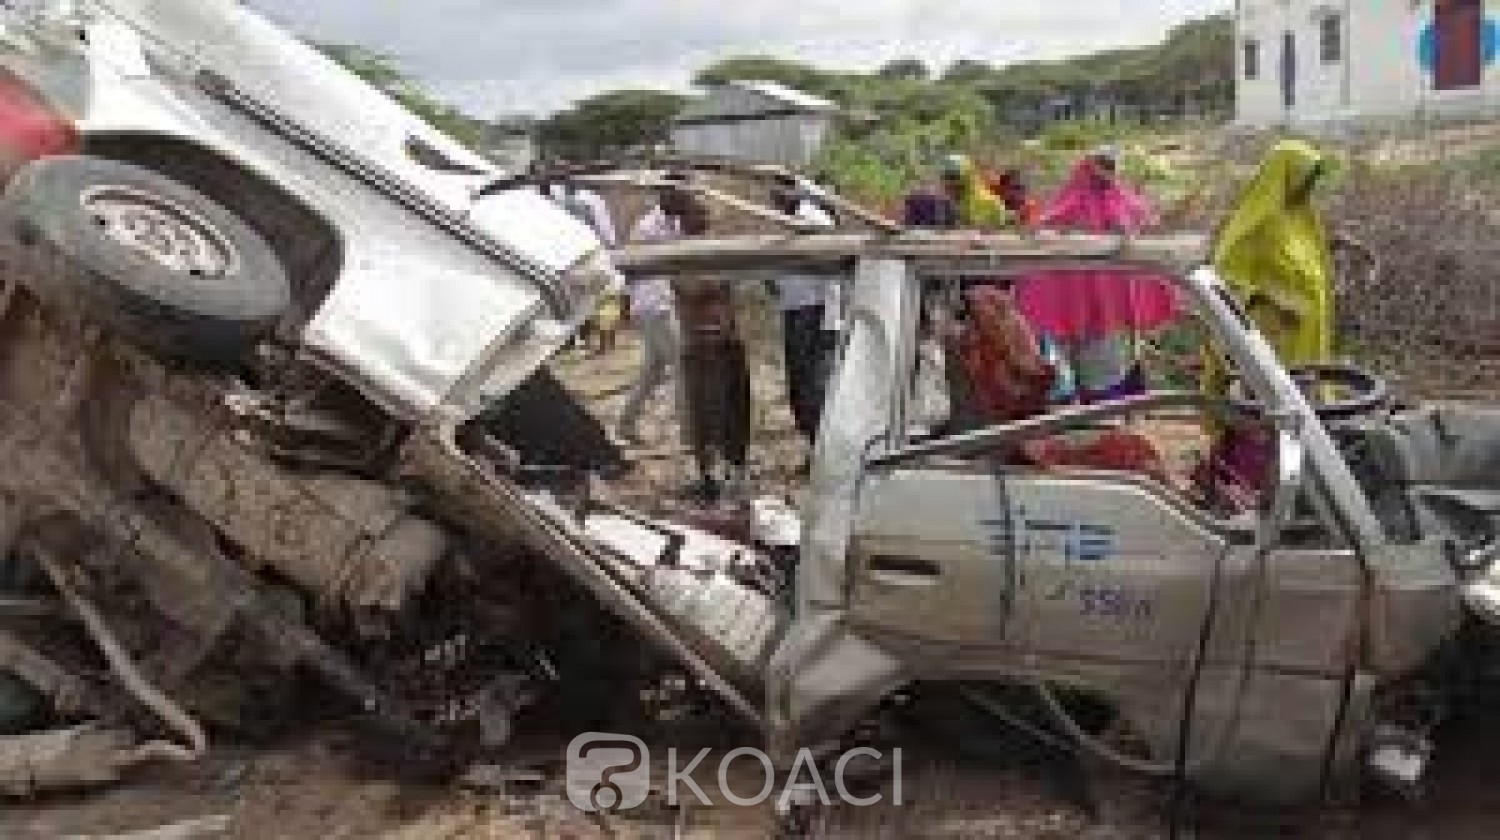 Somalie: L'explosion d'un minibus fait 10 morts et 12 blessés près de Mogadiscio